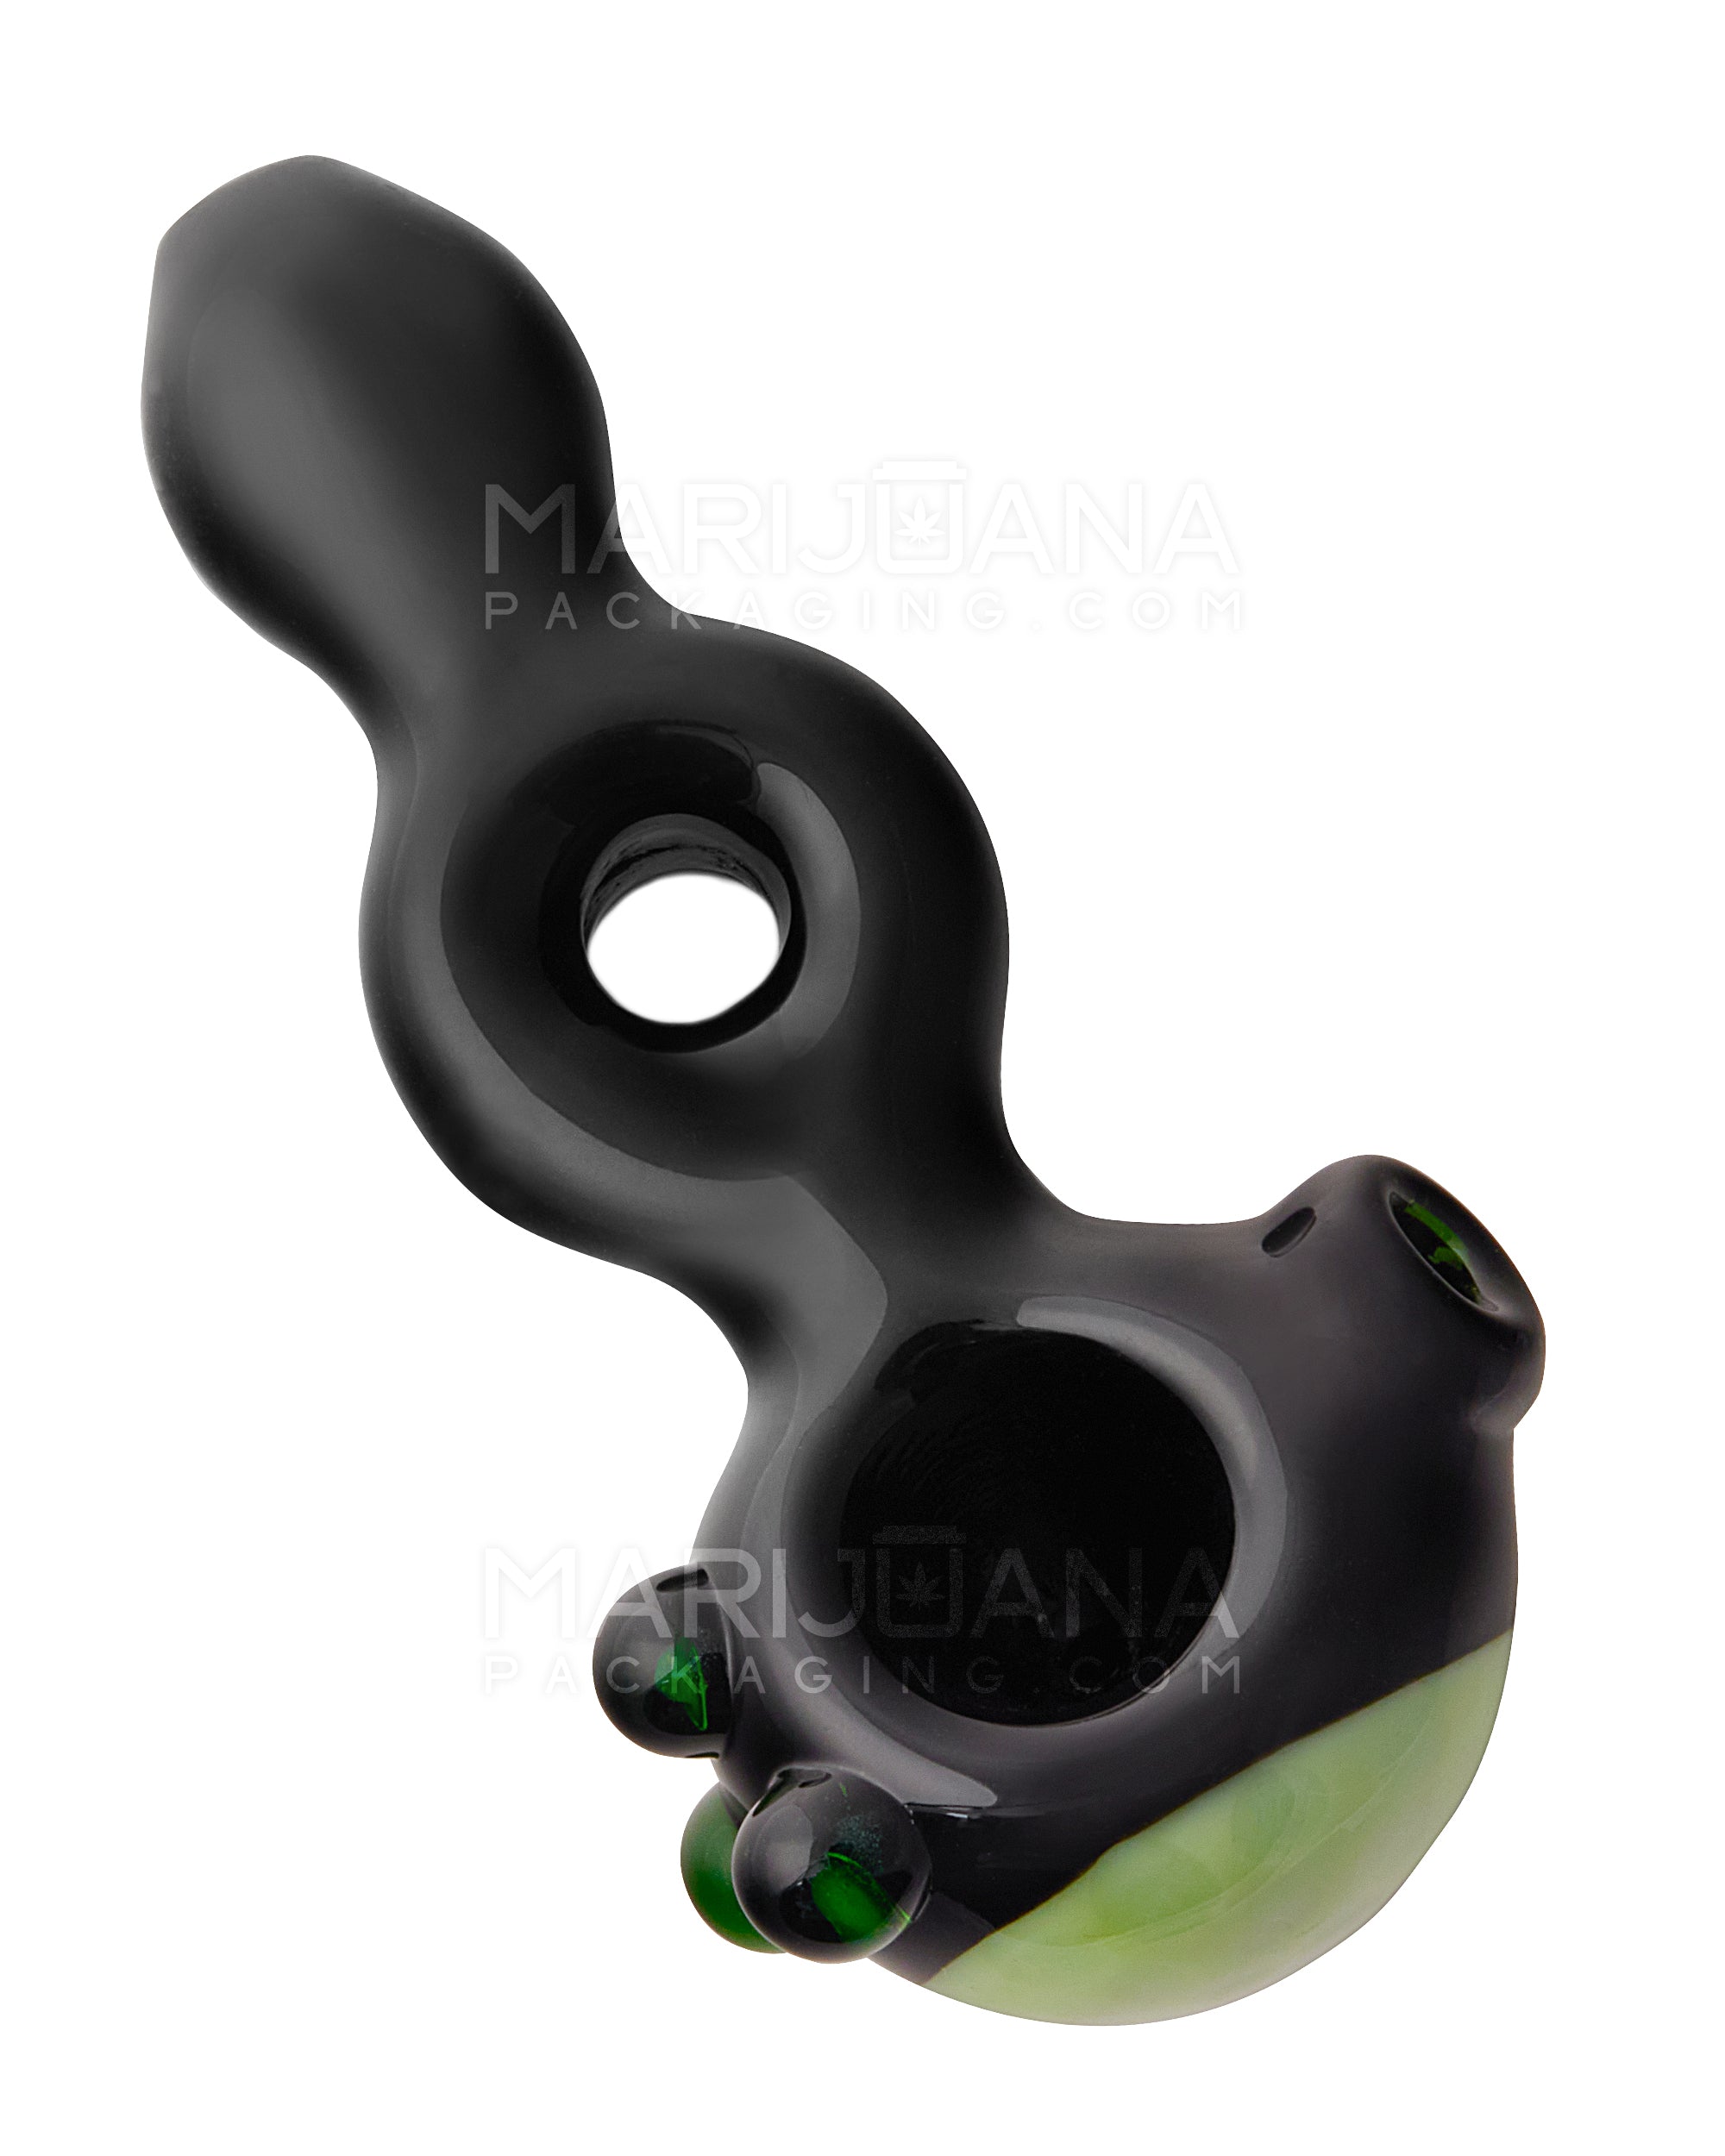 Horsehoe Mouthpiece Spoon Hand Pipe w/ Triple Knockers | 5.25in Long - Glass - Black